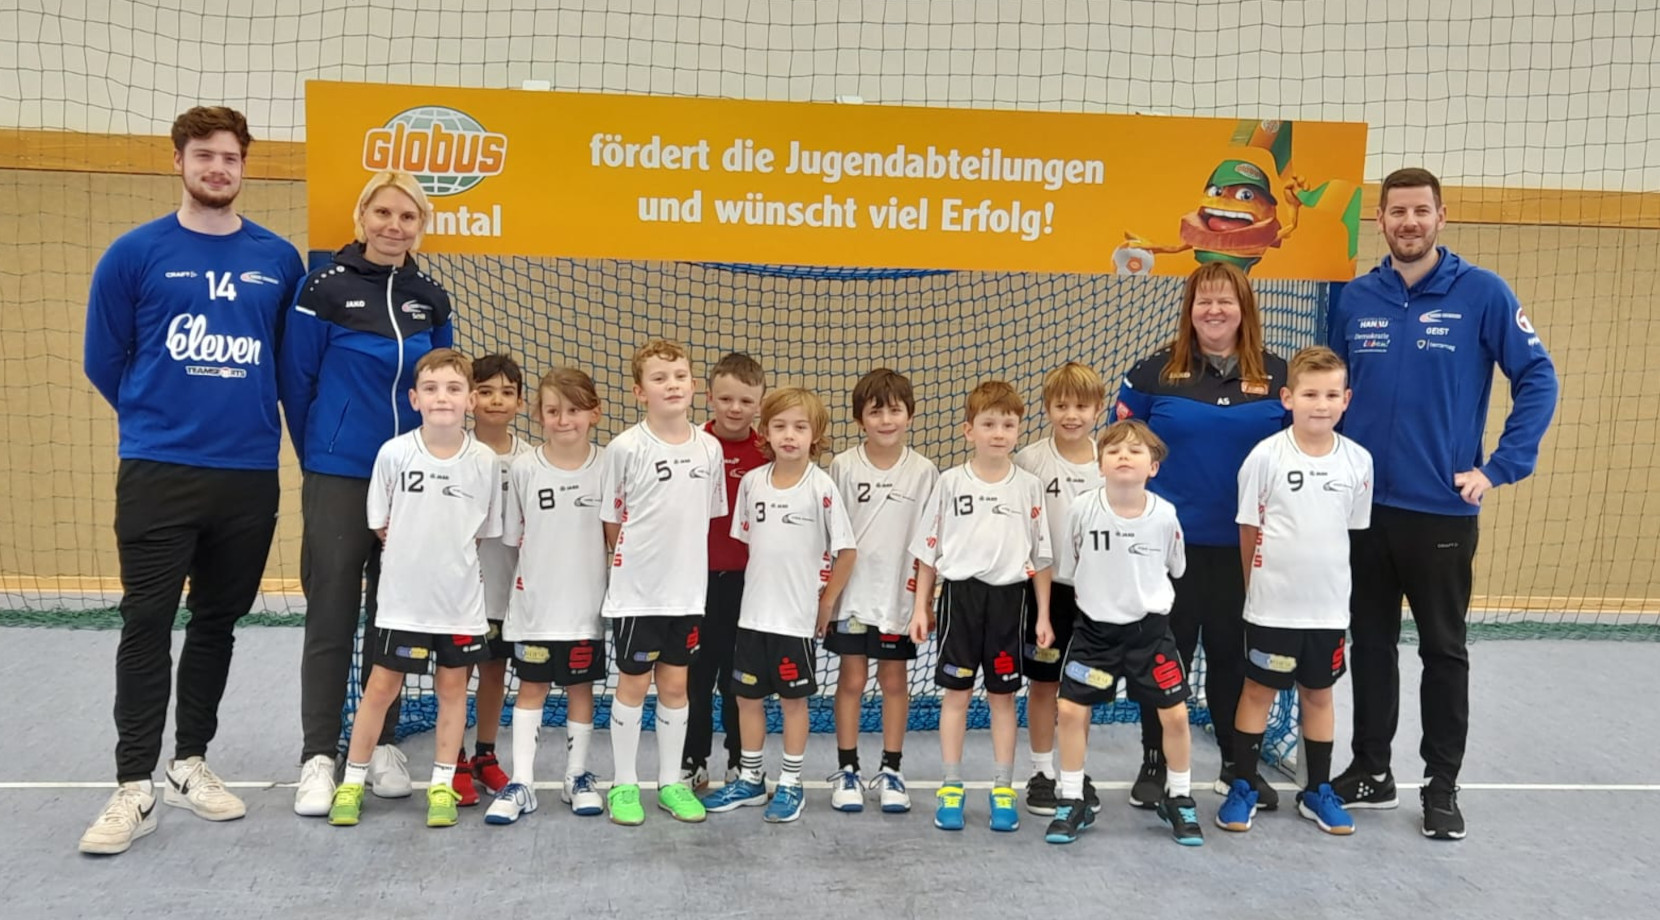 Schiedsrichtermangel: F-Jugend-Turnier von Drittligateam gepfiffen